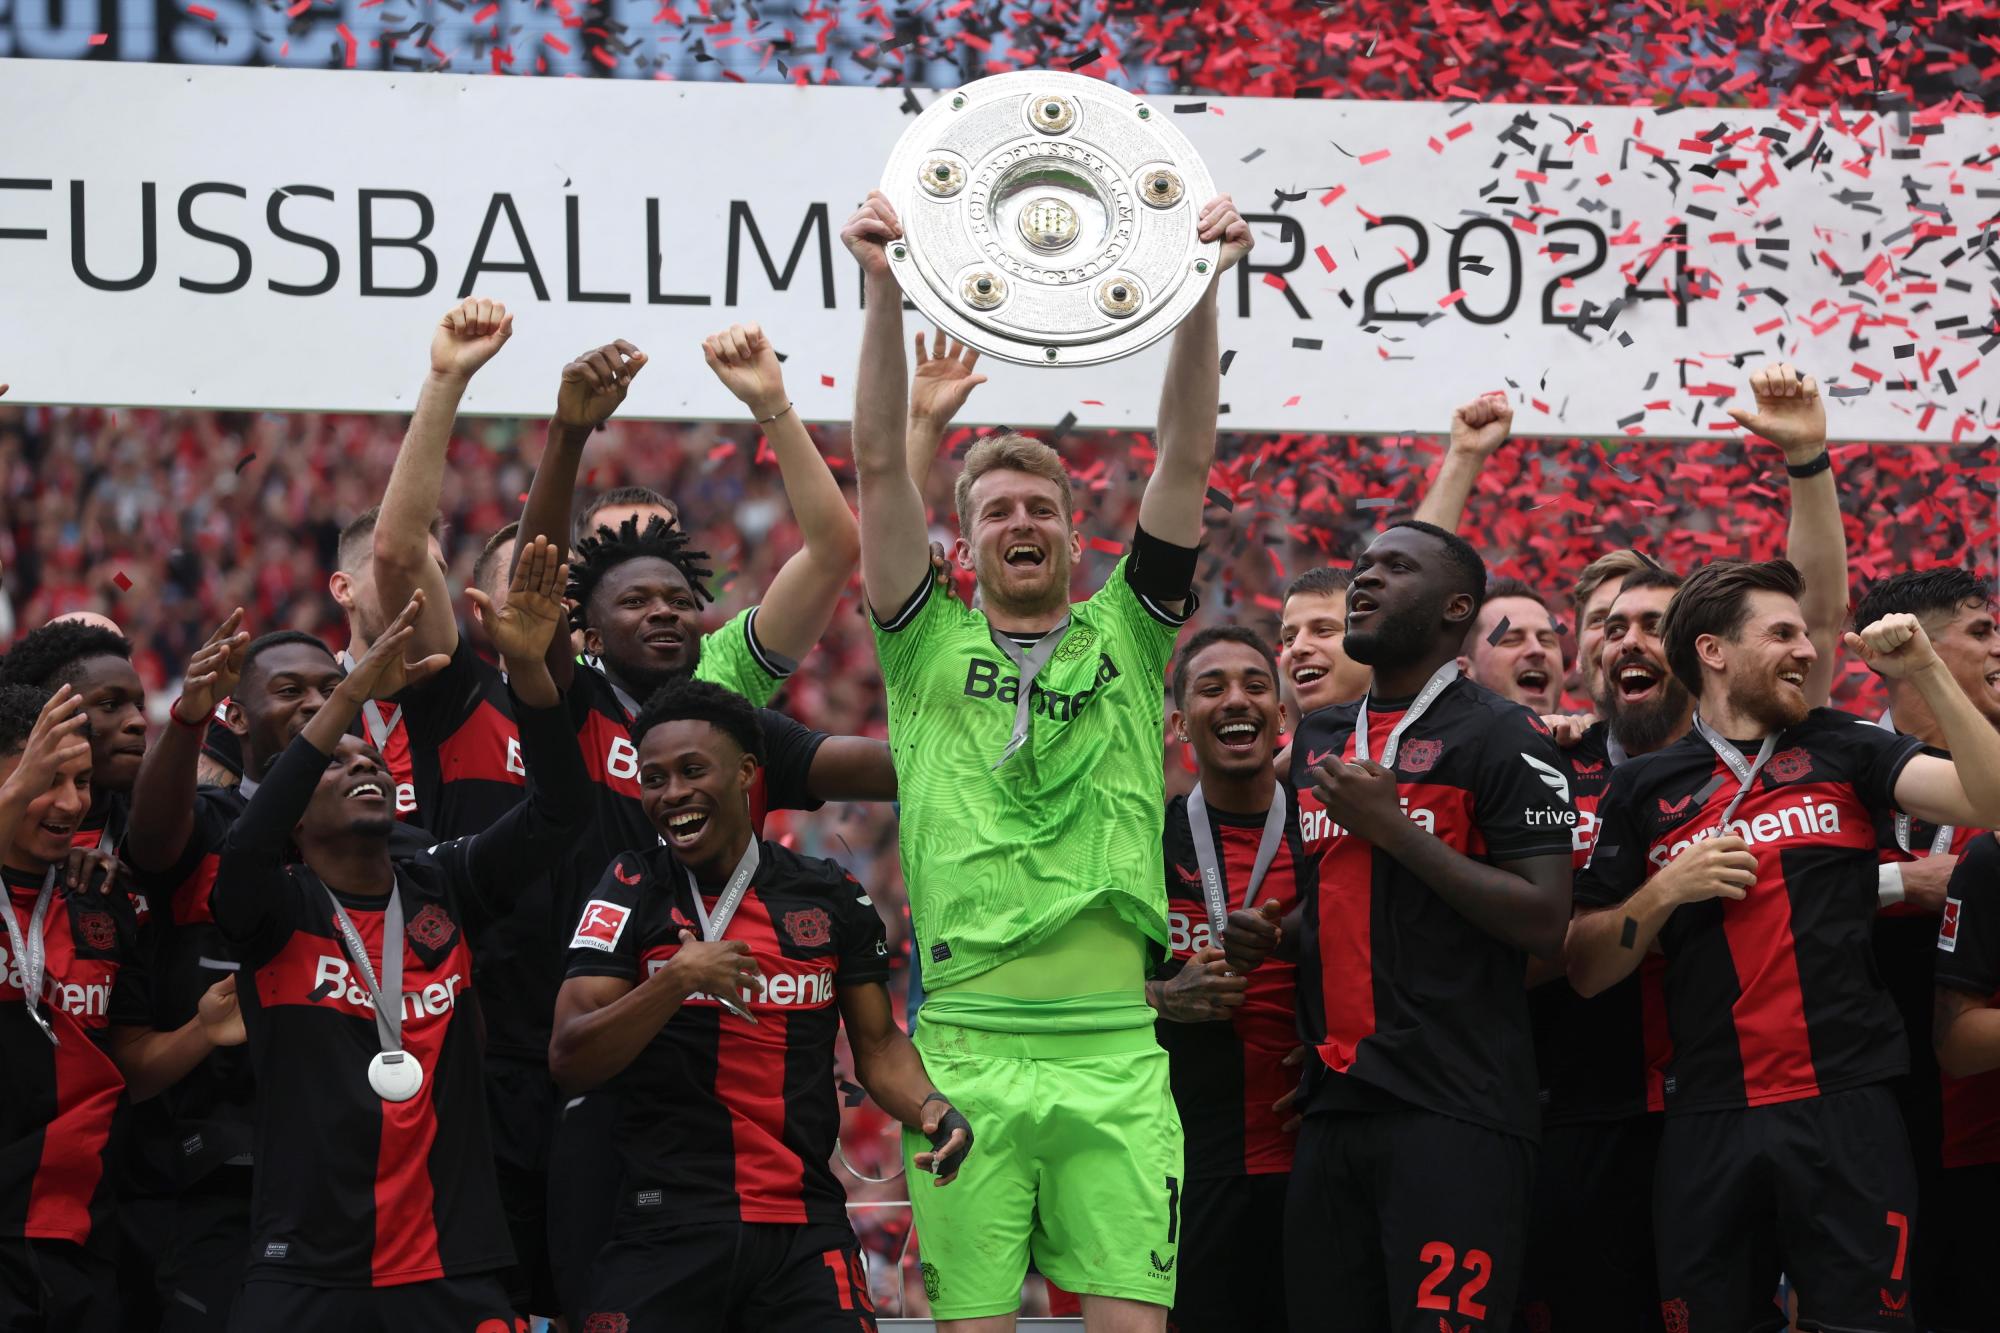 El Bayer Leverkusen completó su campaña en la Bundesliga de manera invicta al vencer al Augsburgo con un sólido 2-1 en el Bay Arena. Con este triunfo, el equipo dirigido por Xabi Alonso aseguró su